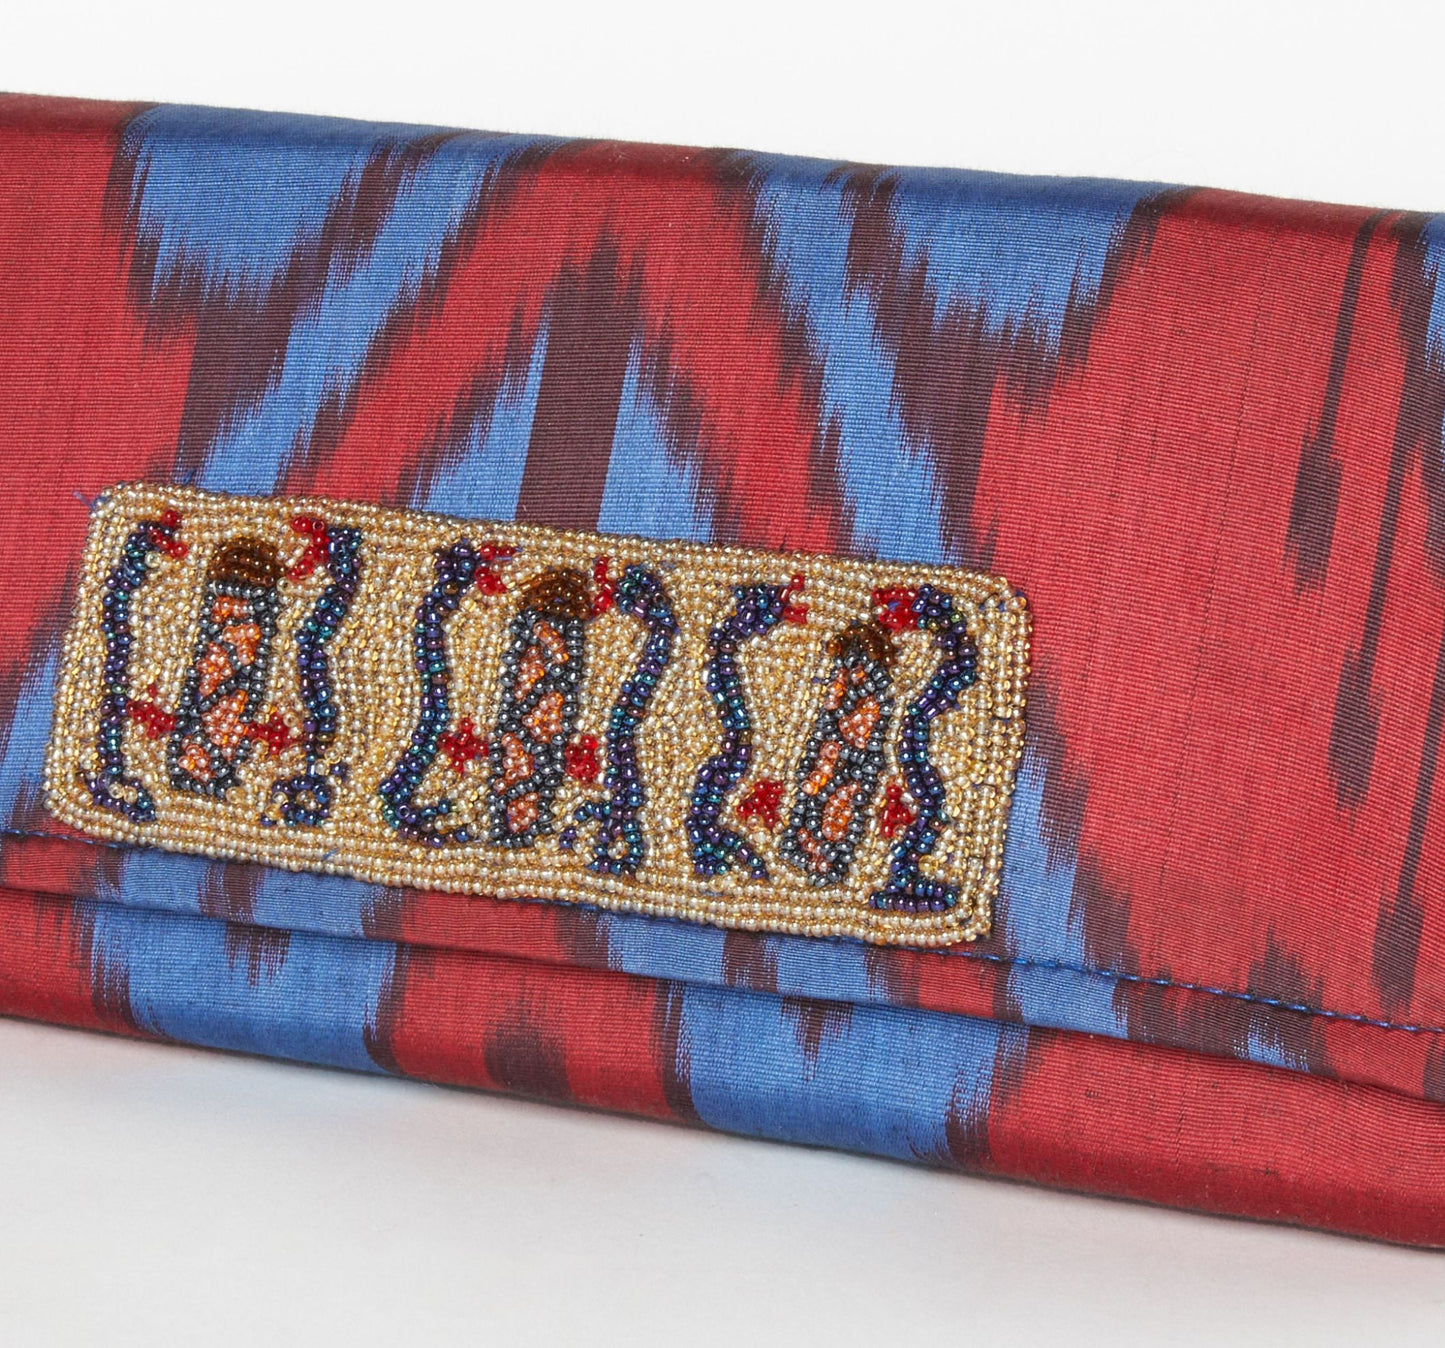 Du Monde Collection - Rowan Silk Ikat Clutch - Red, Blue